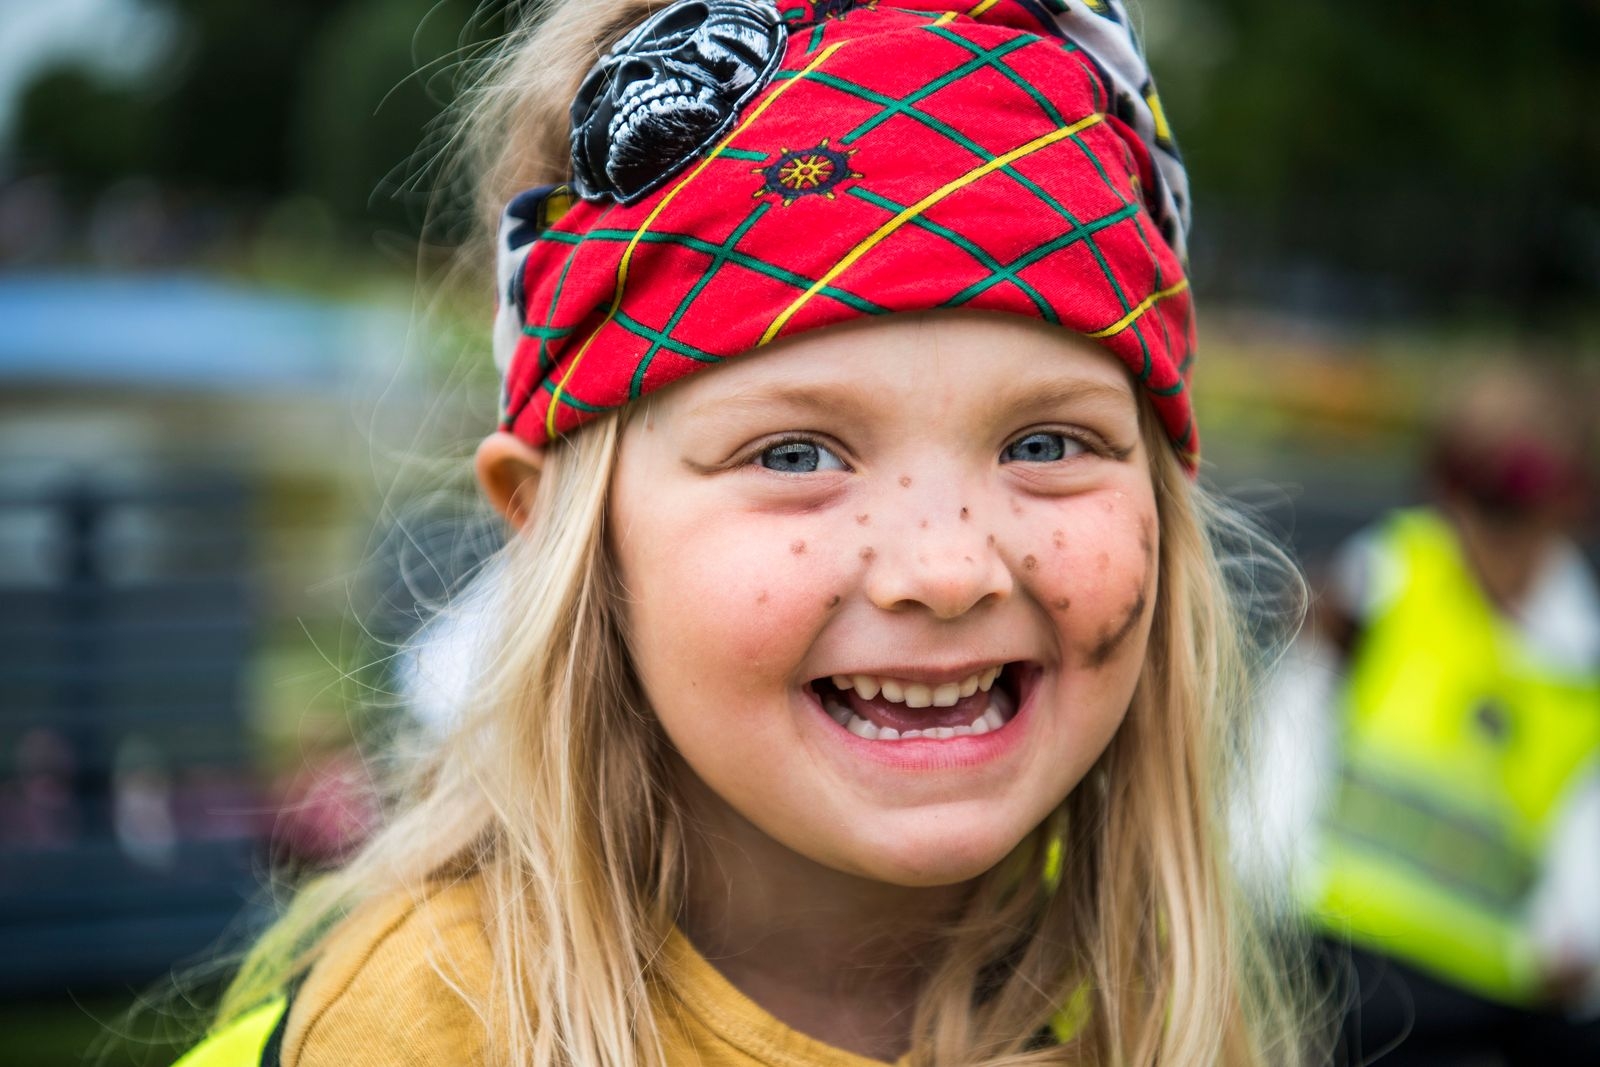 "Det är så kul med pirater”, säger fyraåriga Greta Knutsson från Hästö förskola.